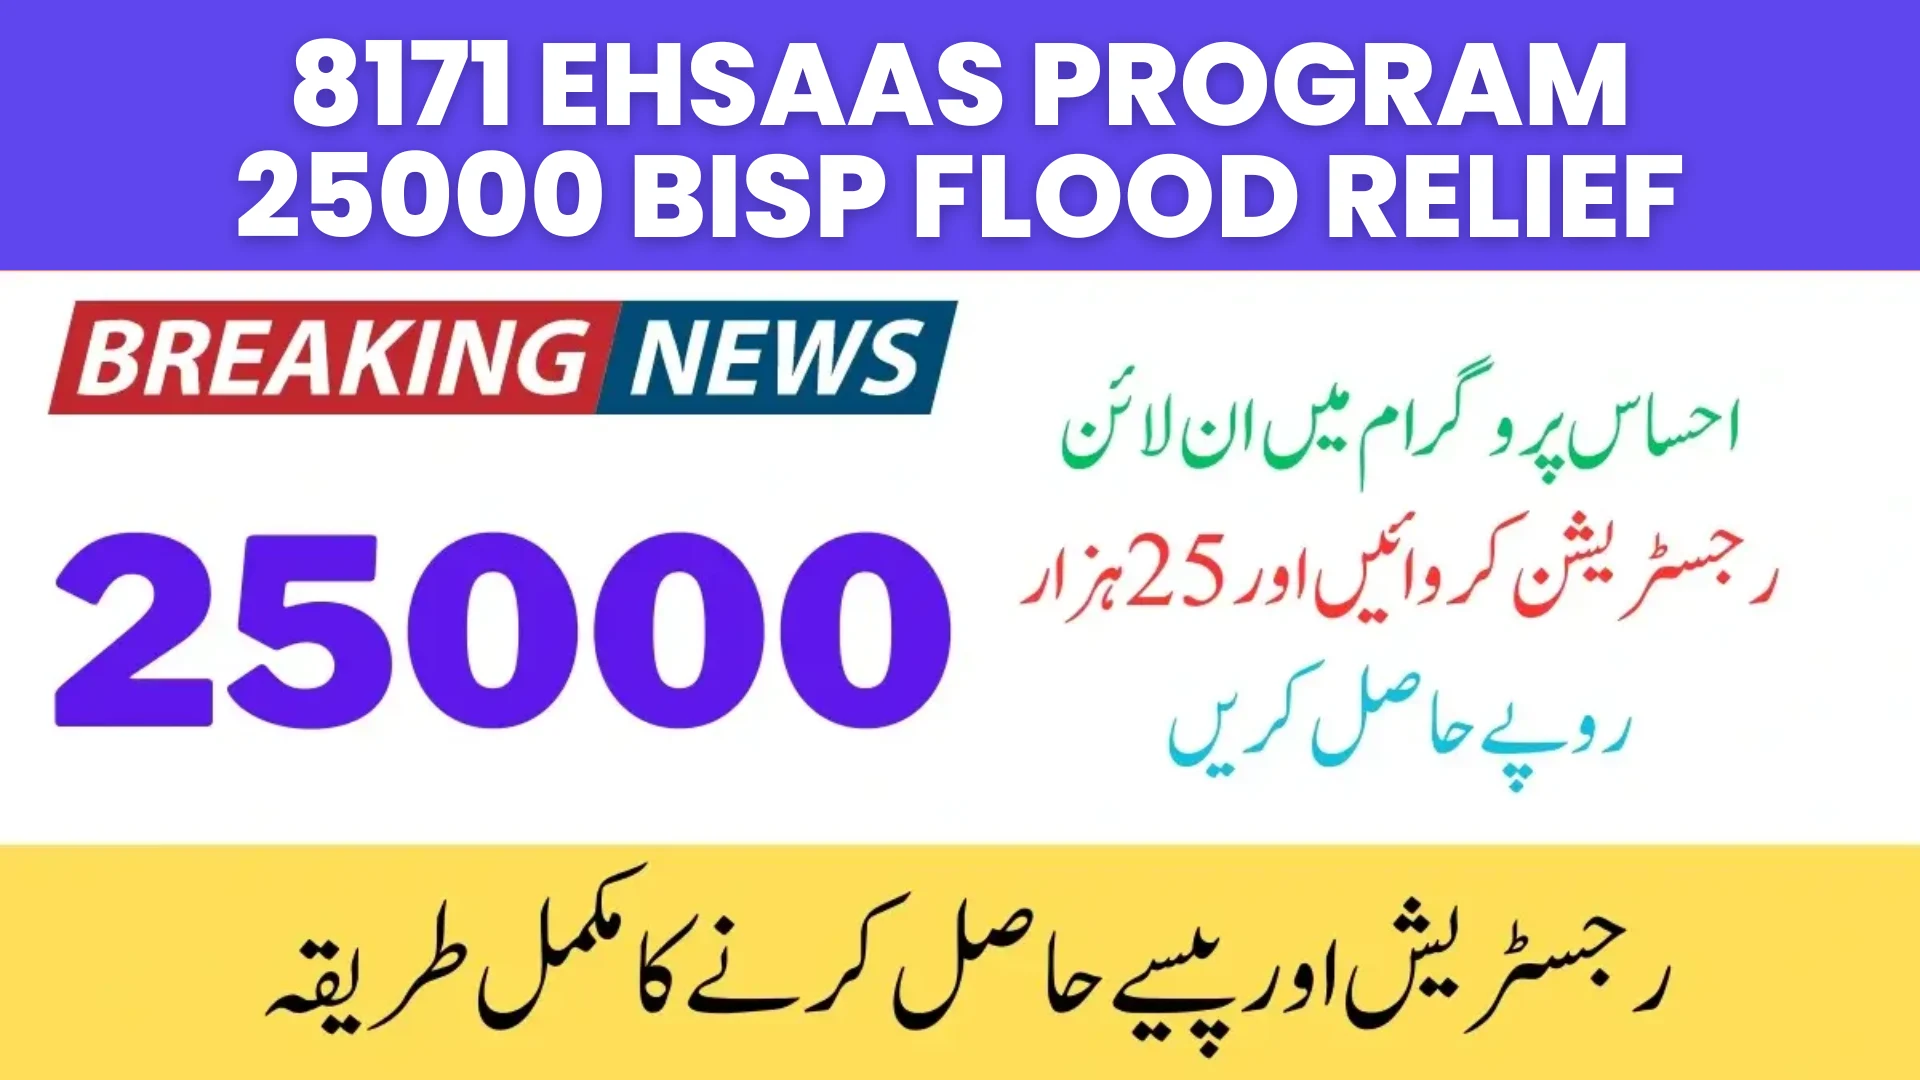 8171 Ehsaas Program 25000 BISP Flood Relief